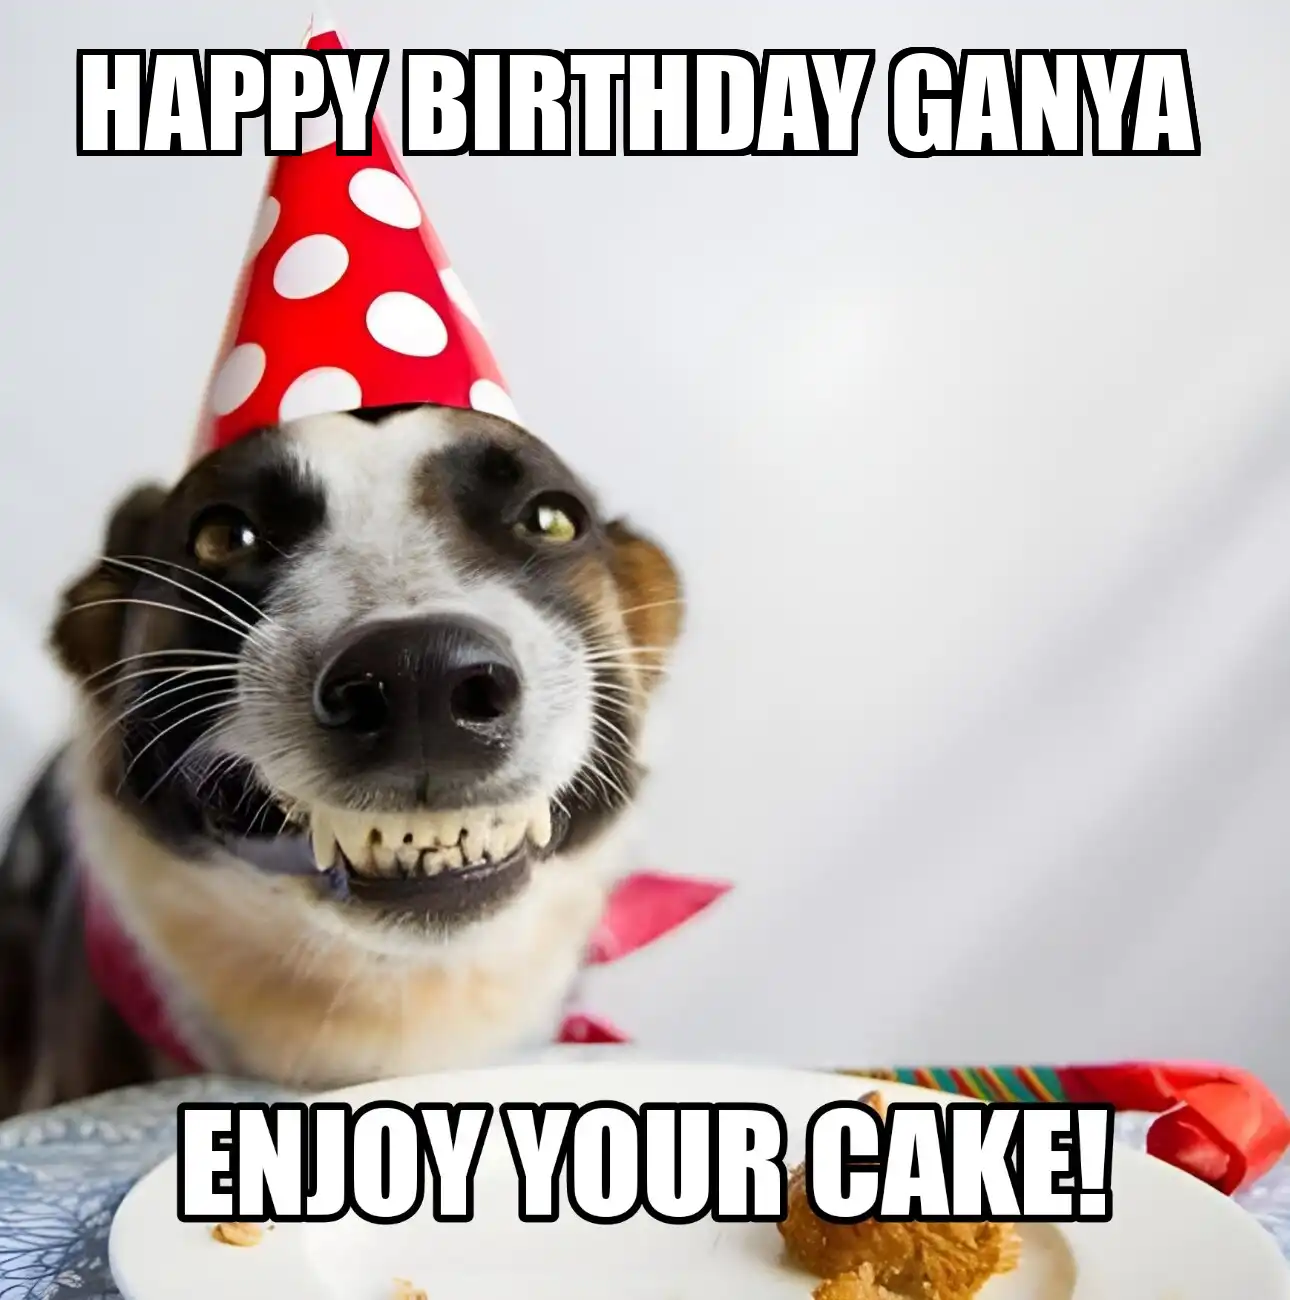 Happy Birthday Ganya Enjoy Your Cake Dog Meme